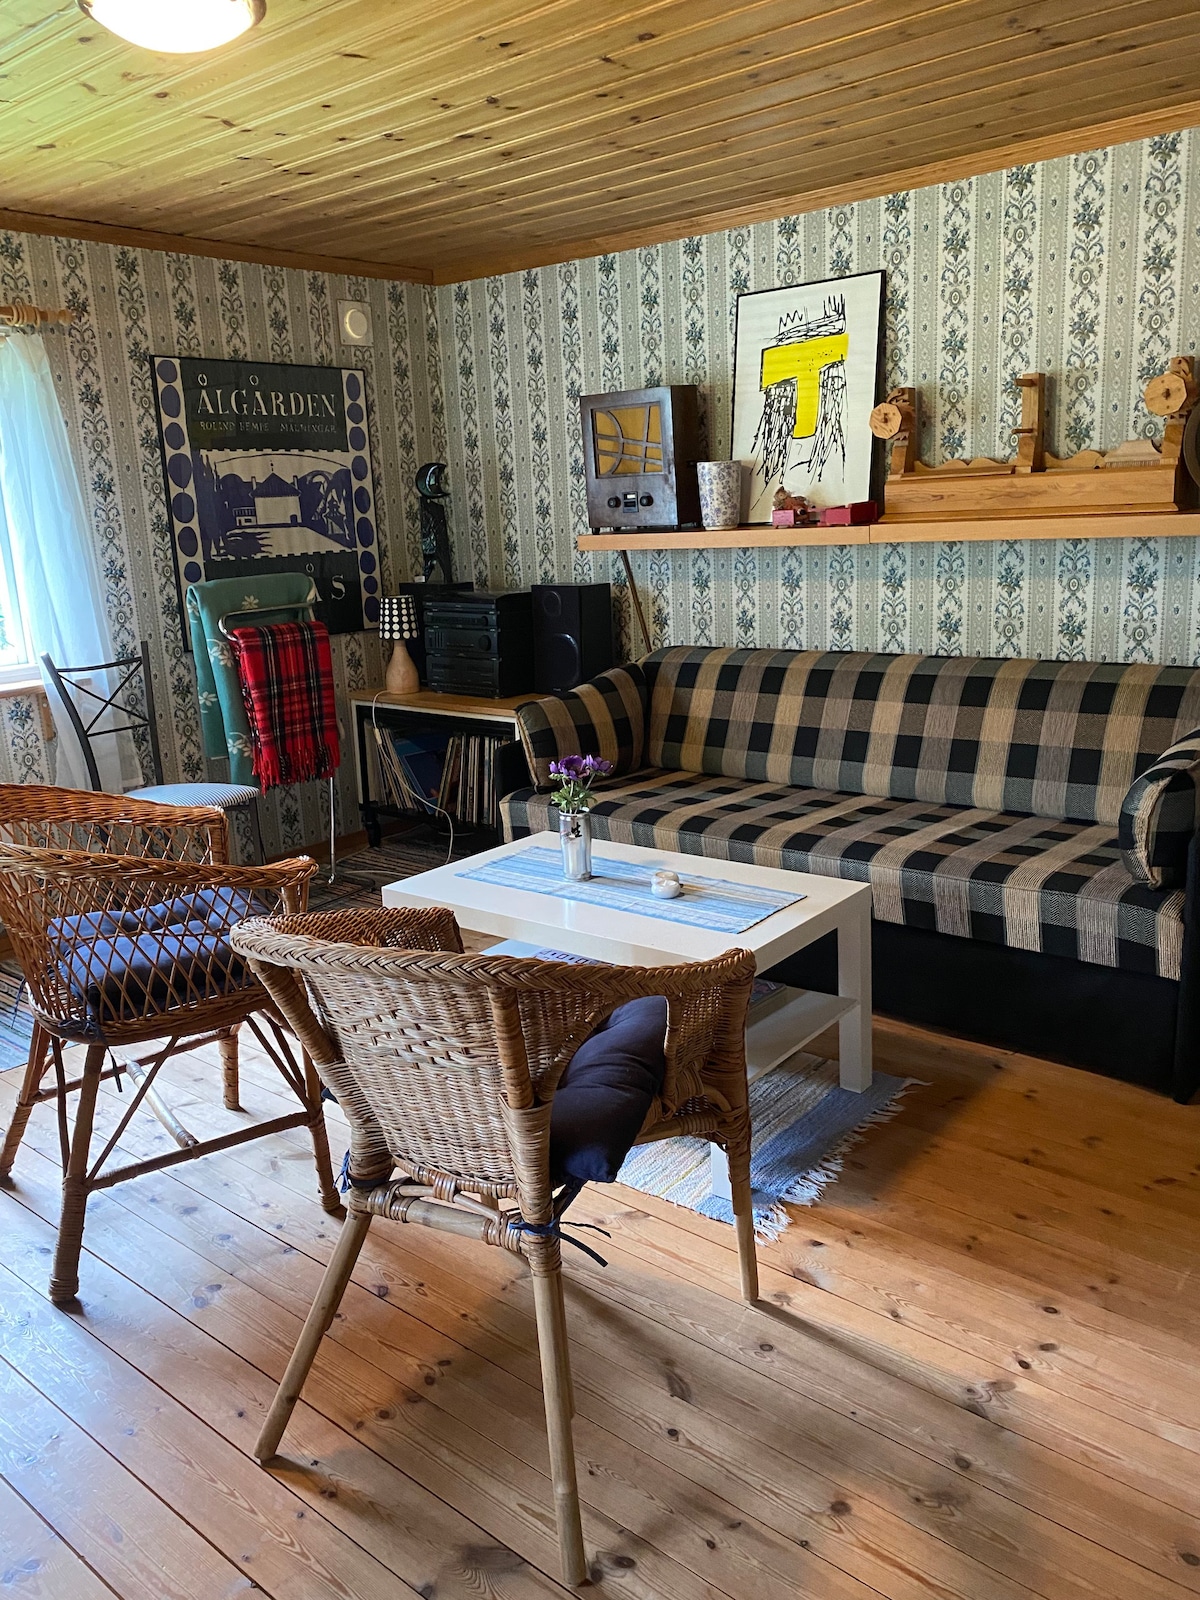 Borås附近乡村的舒适乡村小屋